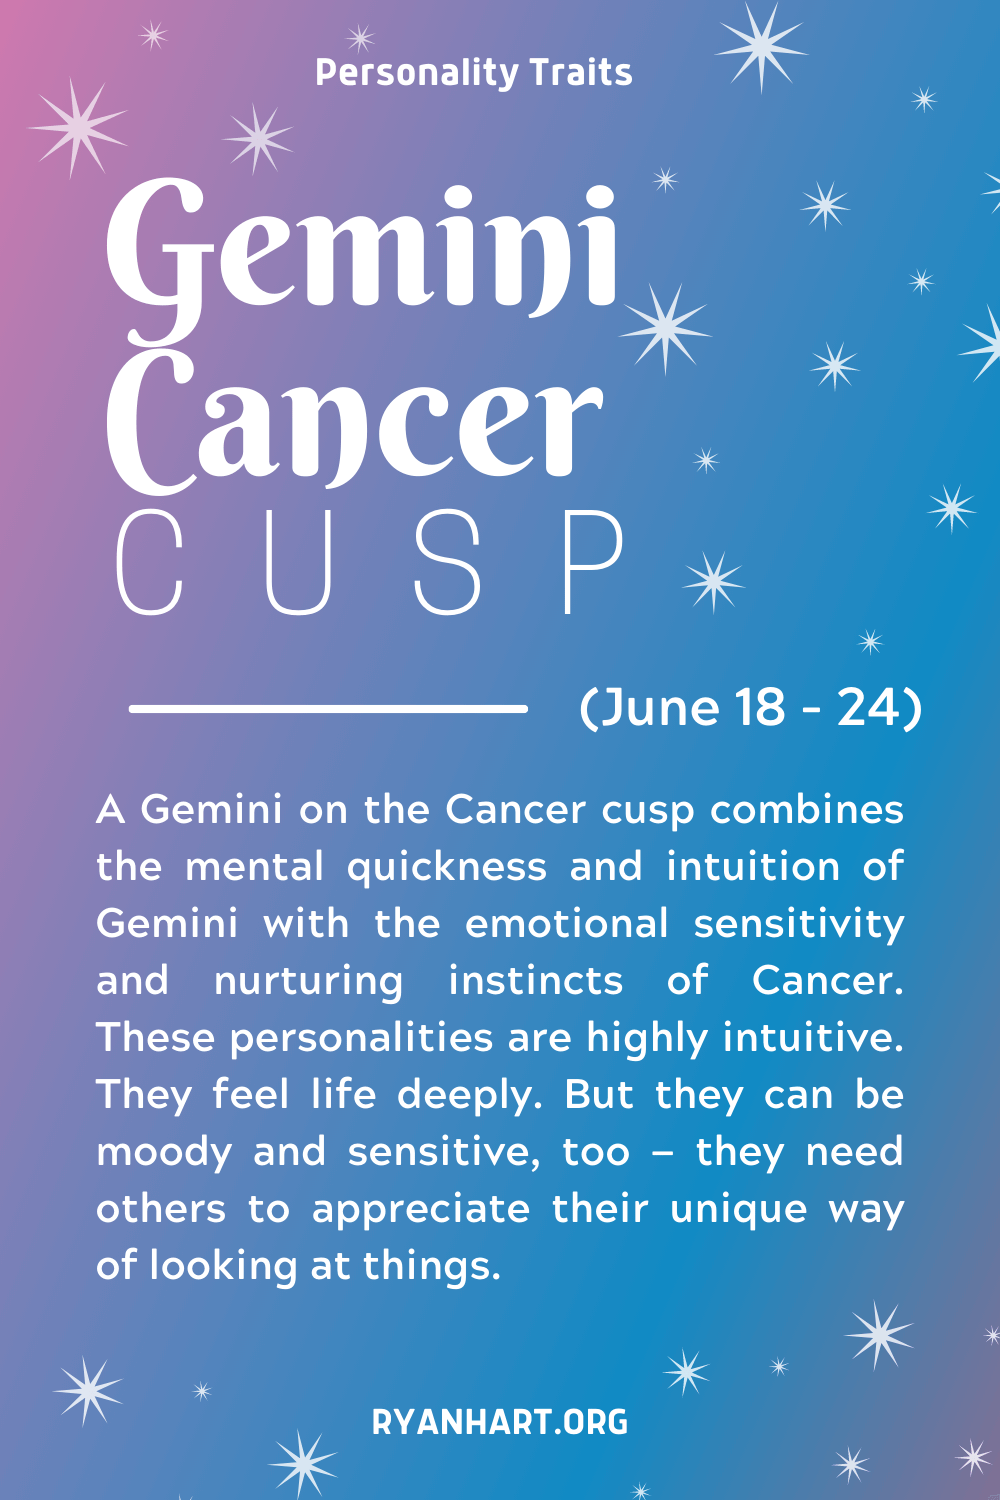  Ciri-ciri Kepribadian Puncak Kanker Gemini